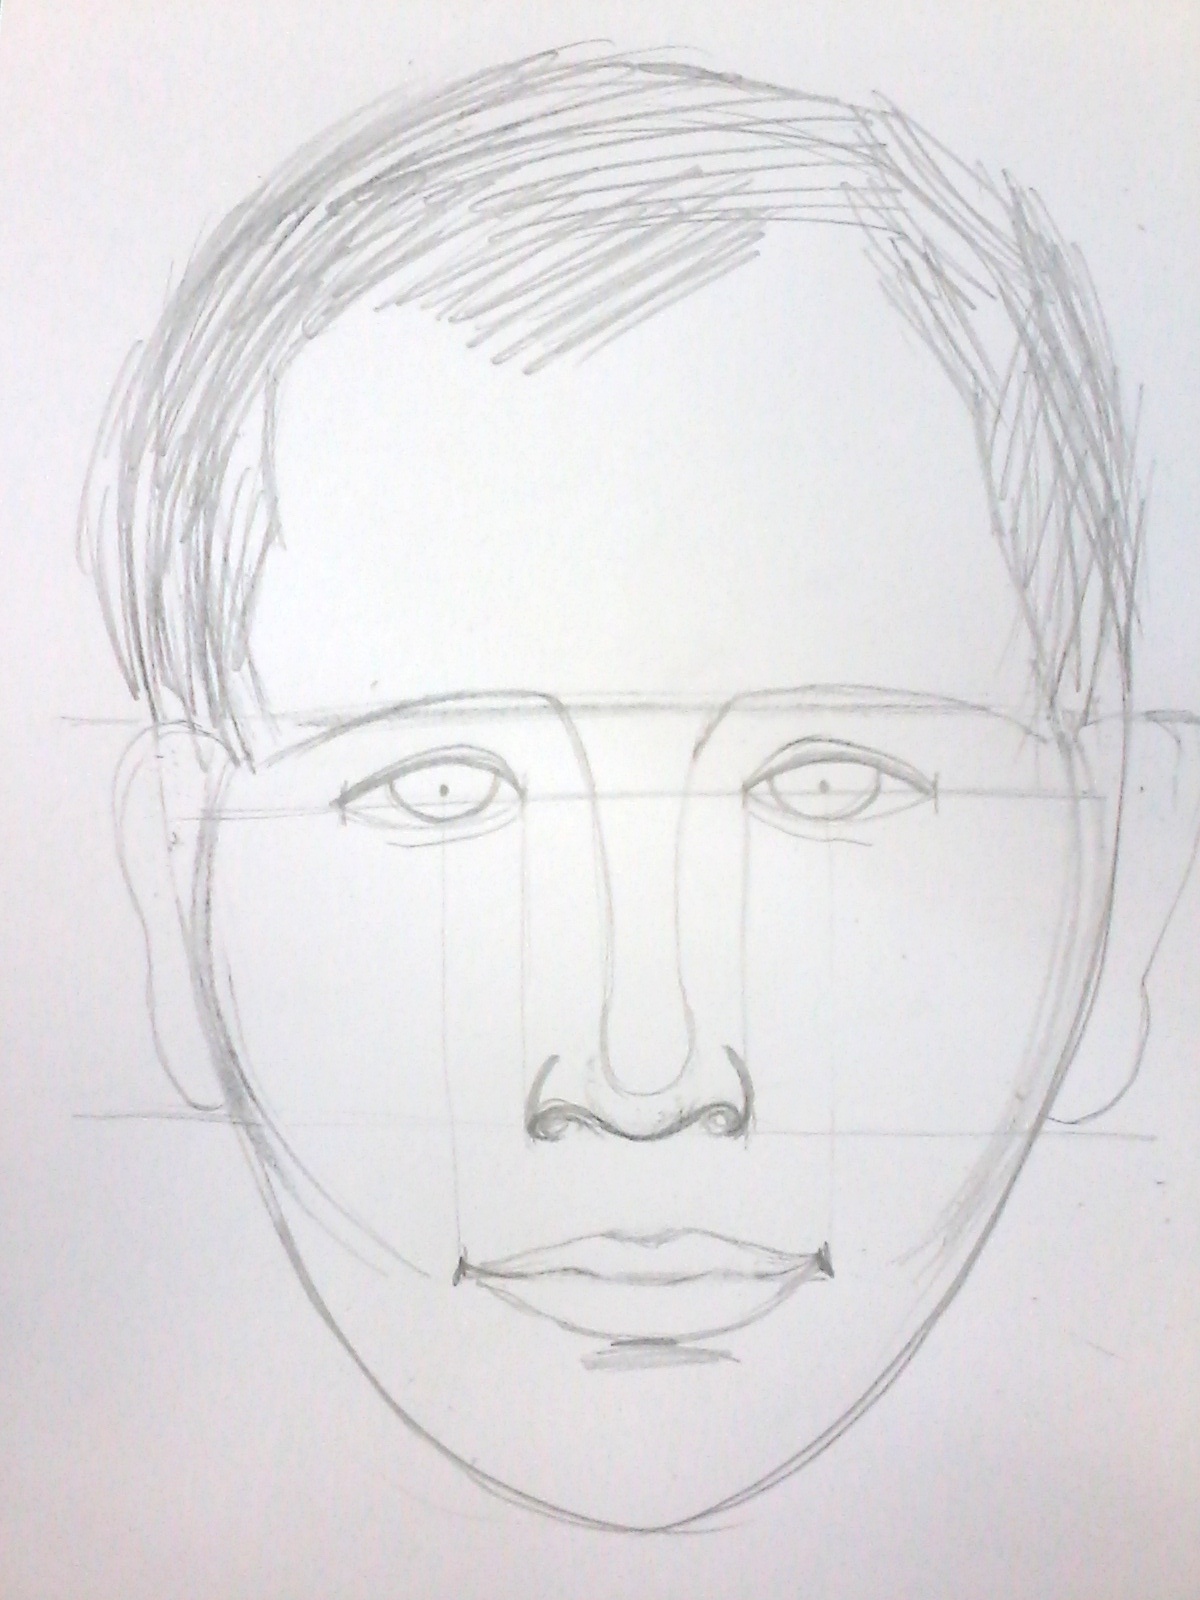 Рисунок лица 1 3. Лицо карандашом. Лицо человека карандашом. Портрет легкий. Человеческое лицо рисунок.